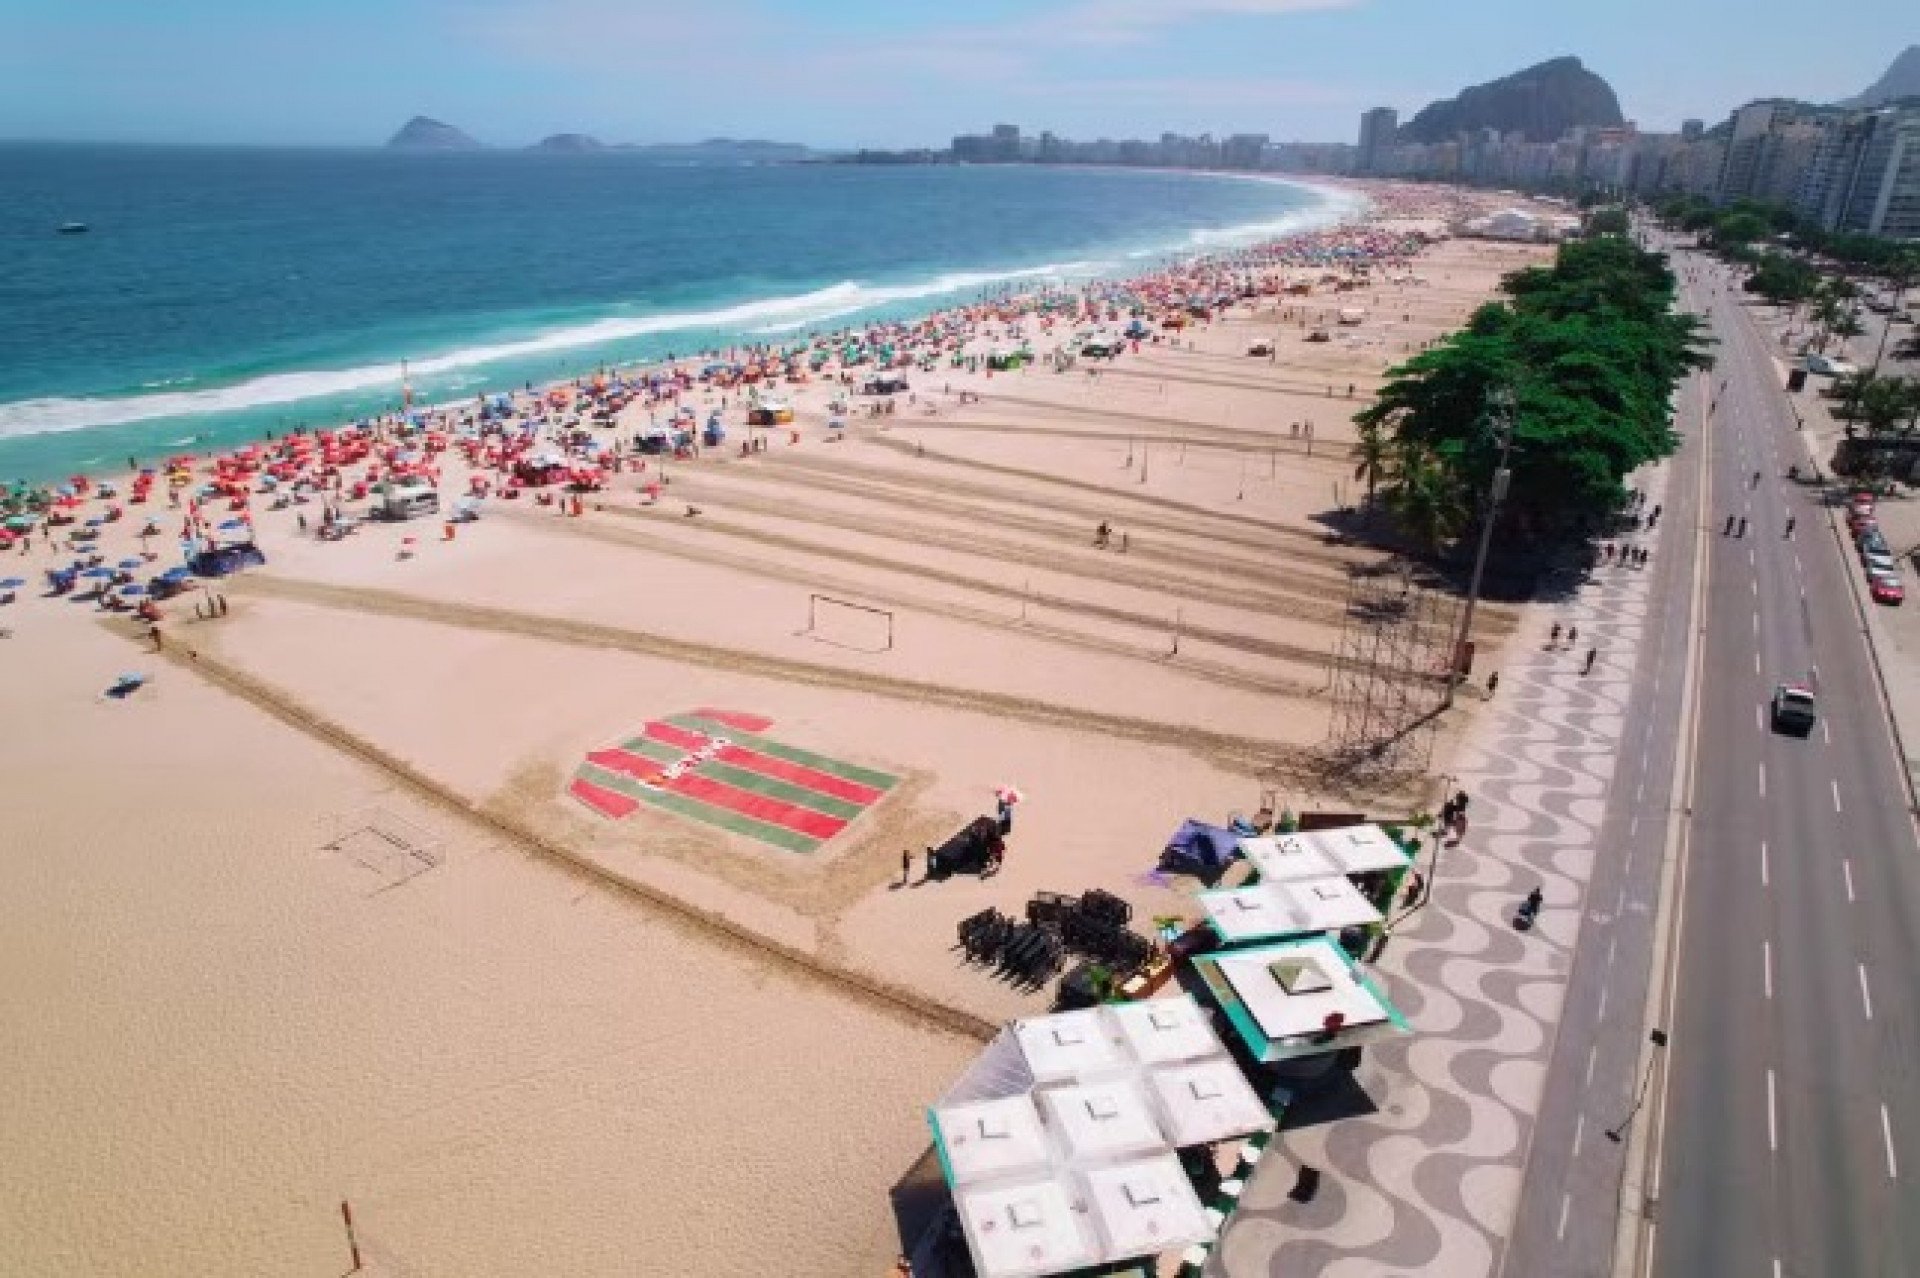 Camisa gigante do Fluminense é desenhada nas areias de Copacabana - Divulgação / Alob Sports